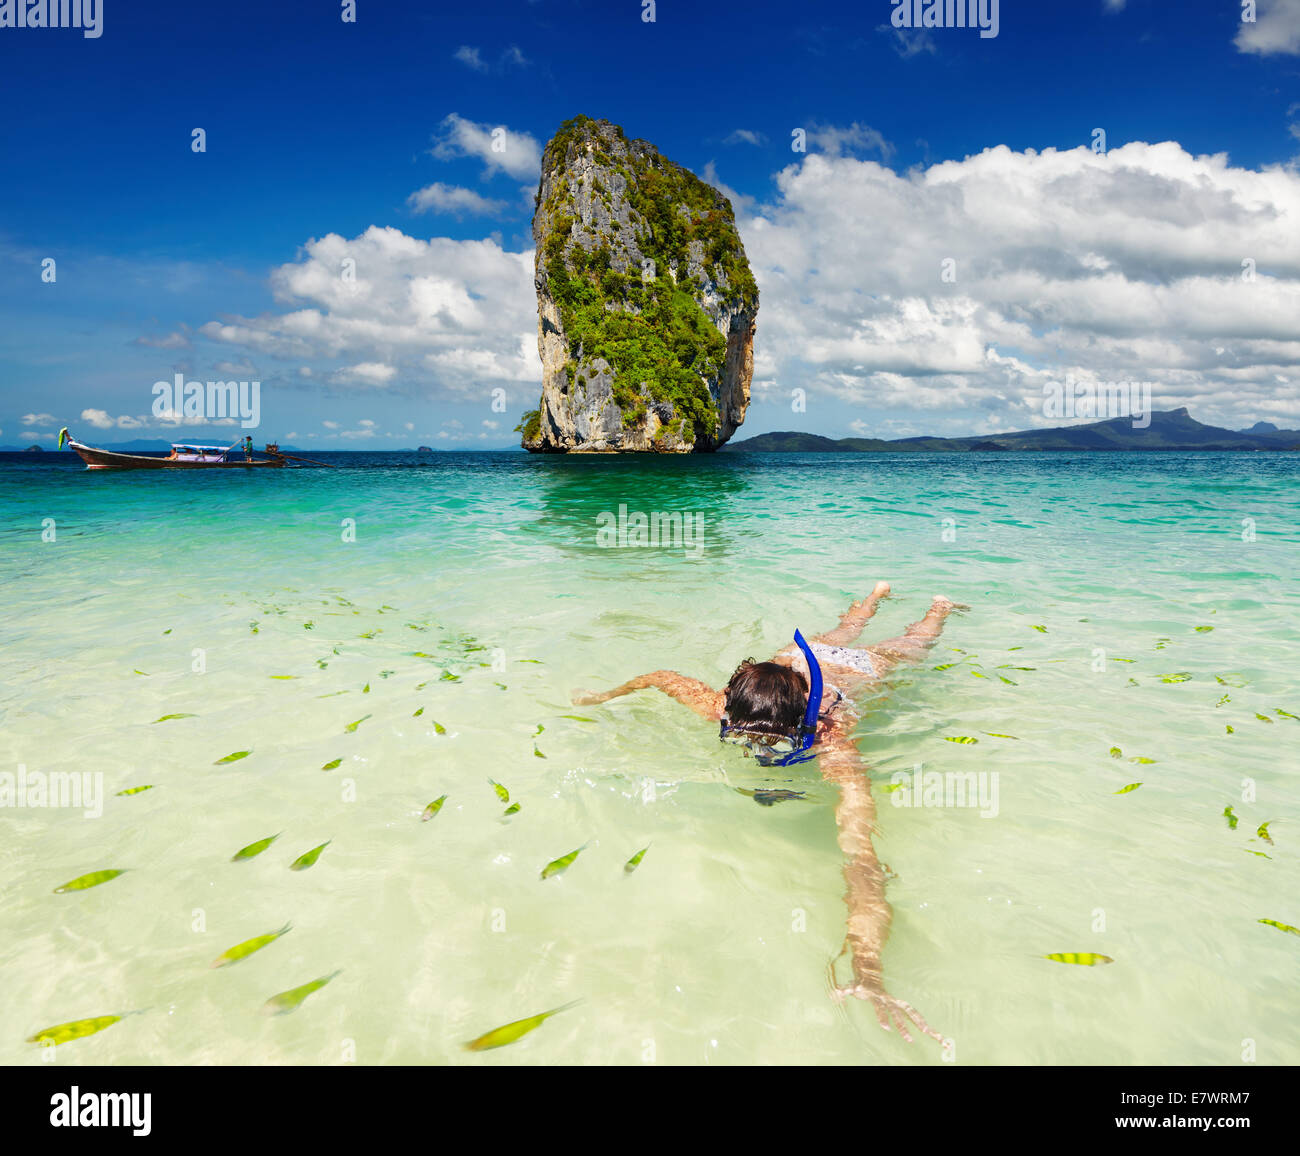 Mujer nadar con snorkel, Mar de Andaman, Tailandia Foto de stock